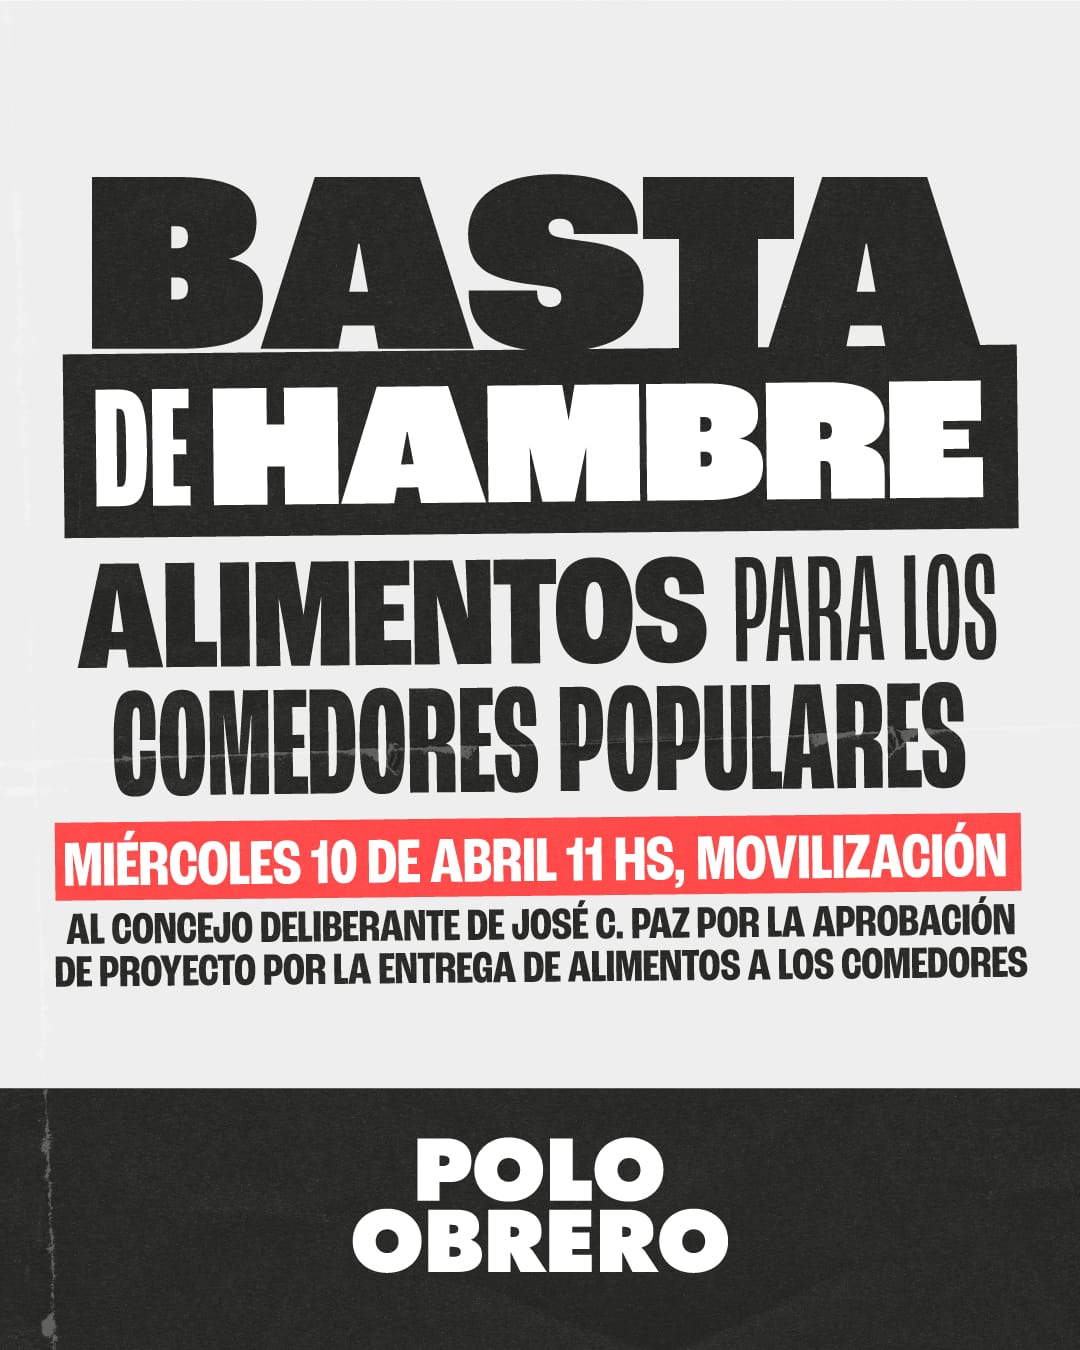 José. C. Paz: El Polo Obrero se moviliza al Concejo Deliberante bajo la consigna “Basta de hambre”